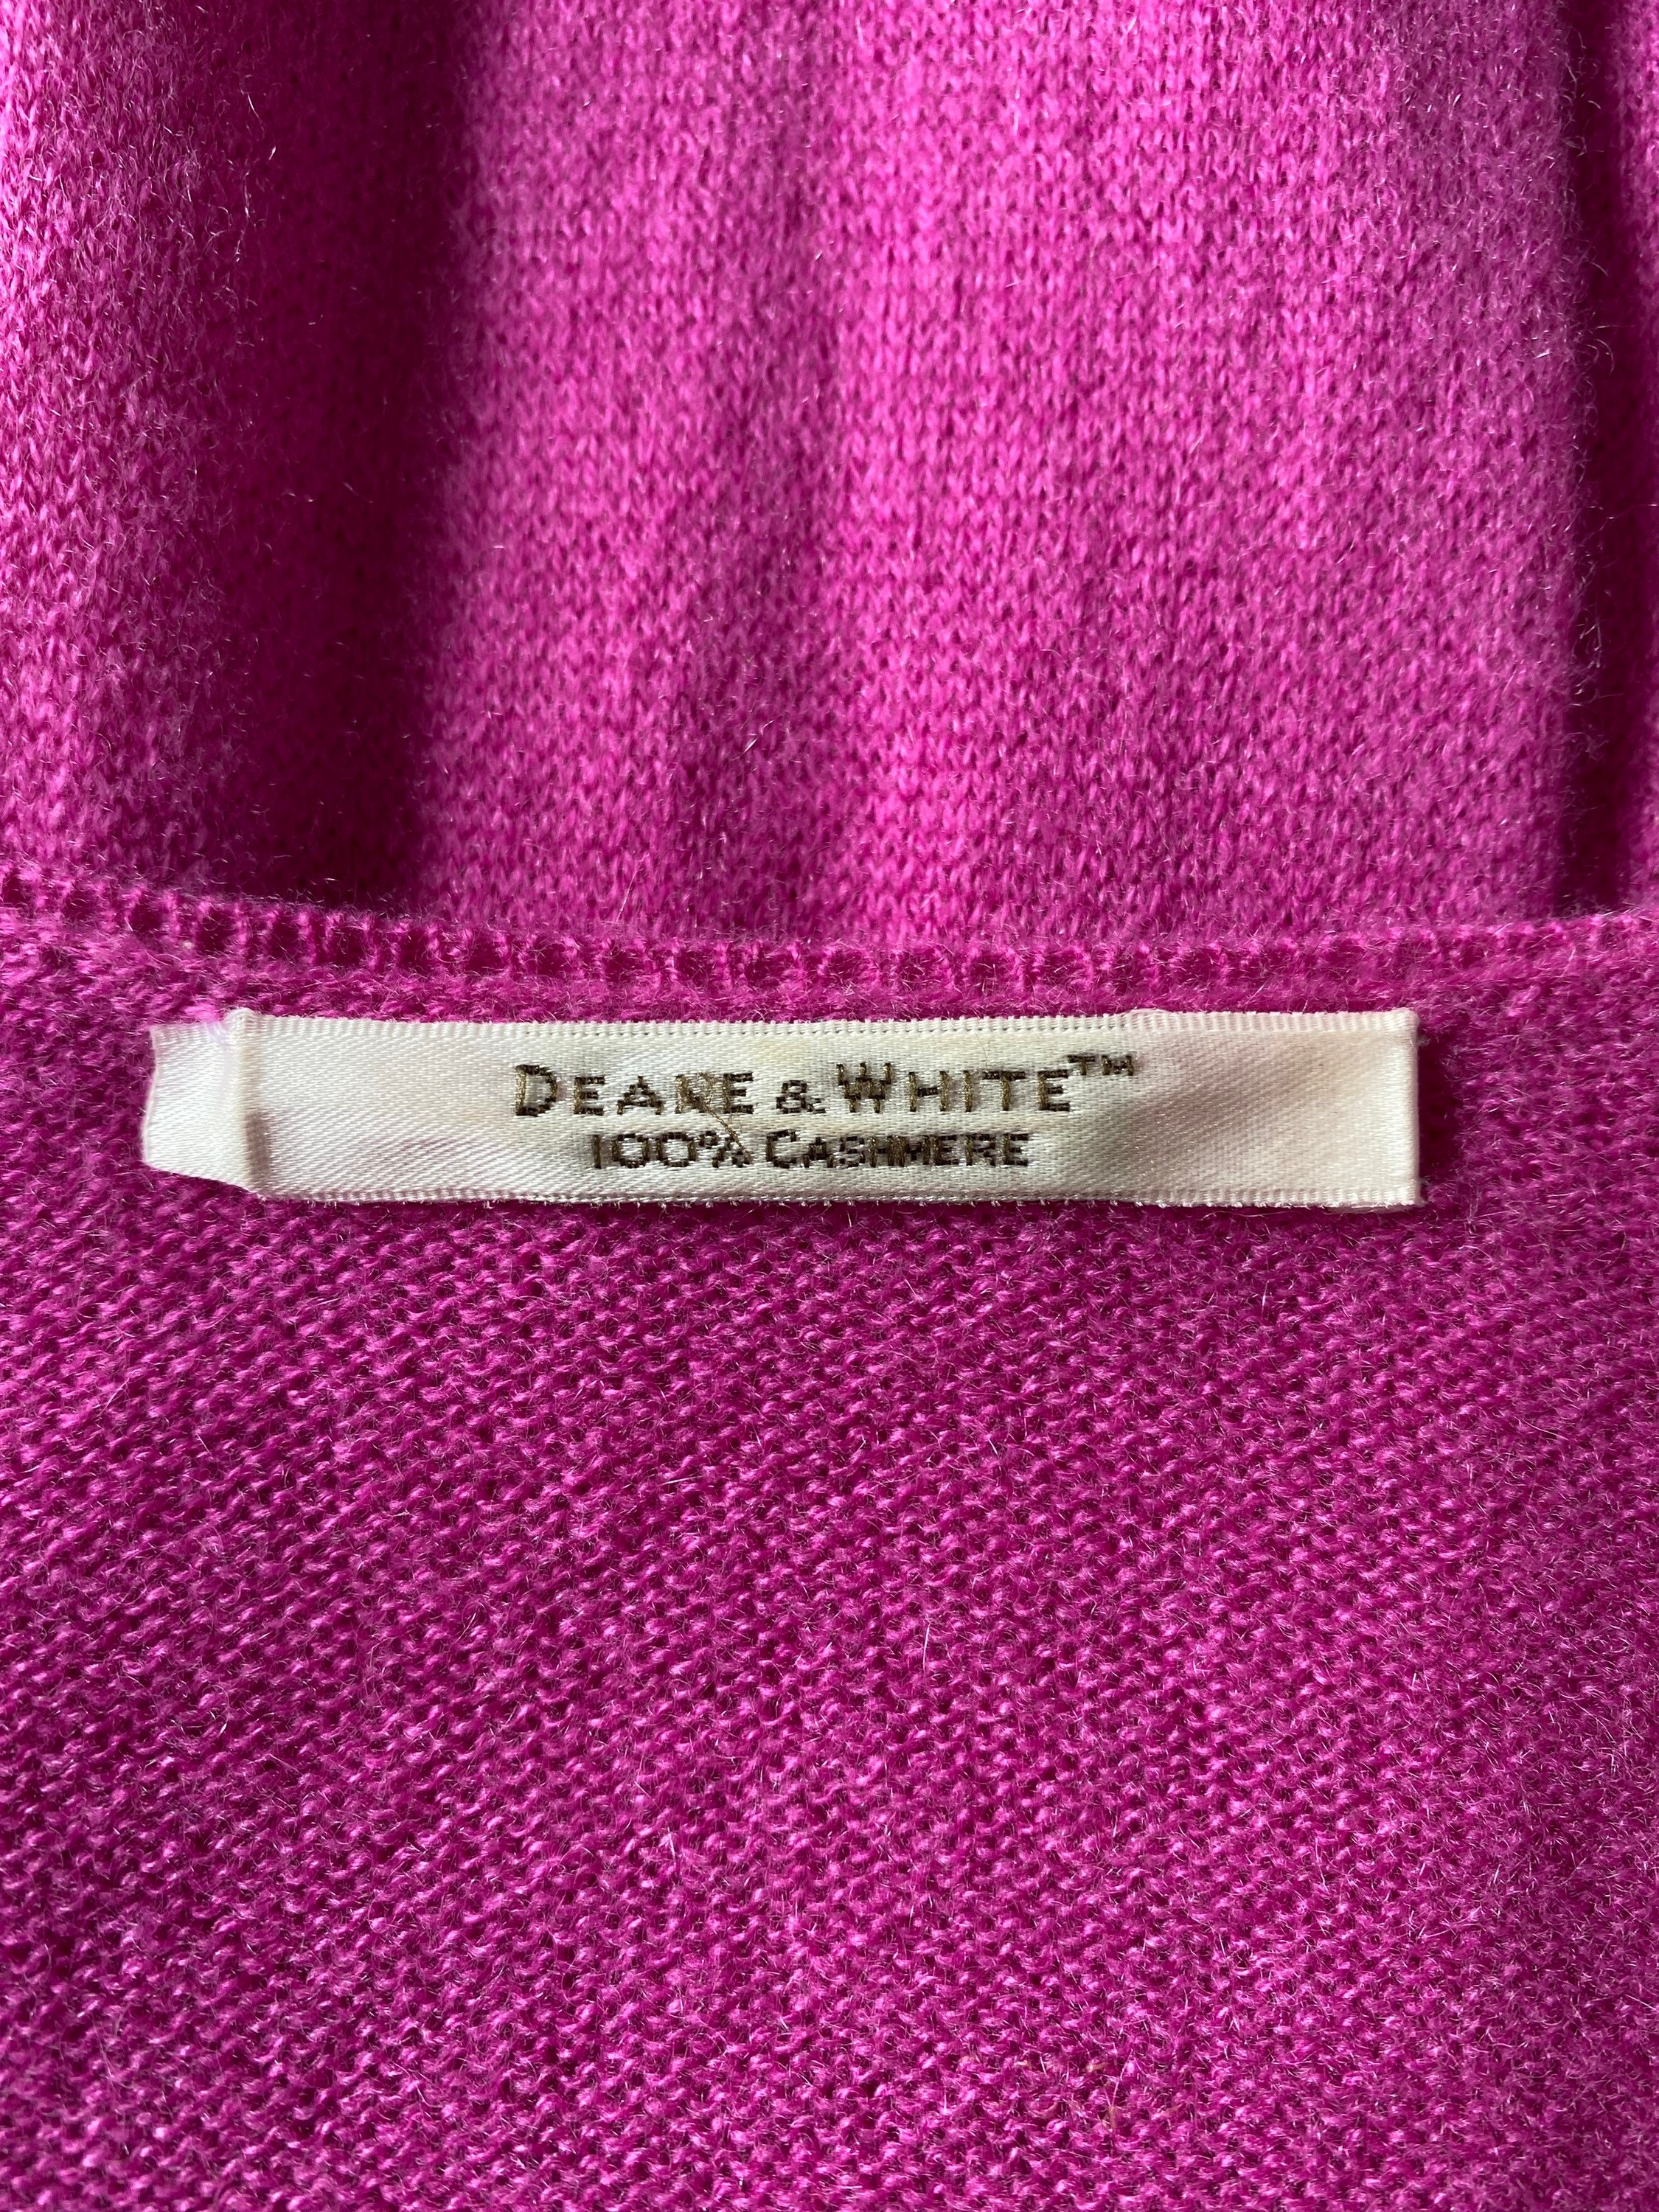 Deane & White 100% Pure Cashmere V Neck Sweater. FREE UK POST - Etsy UK